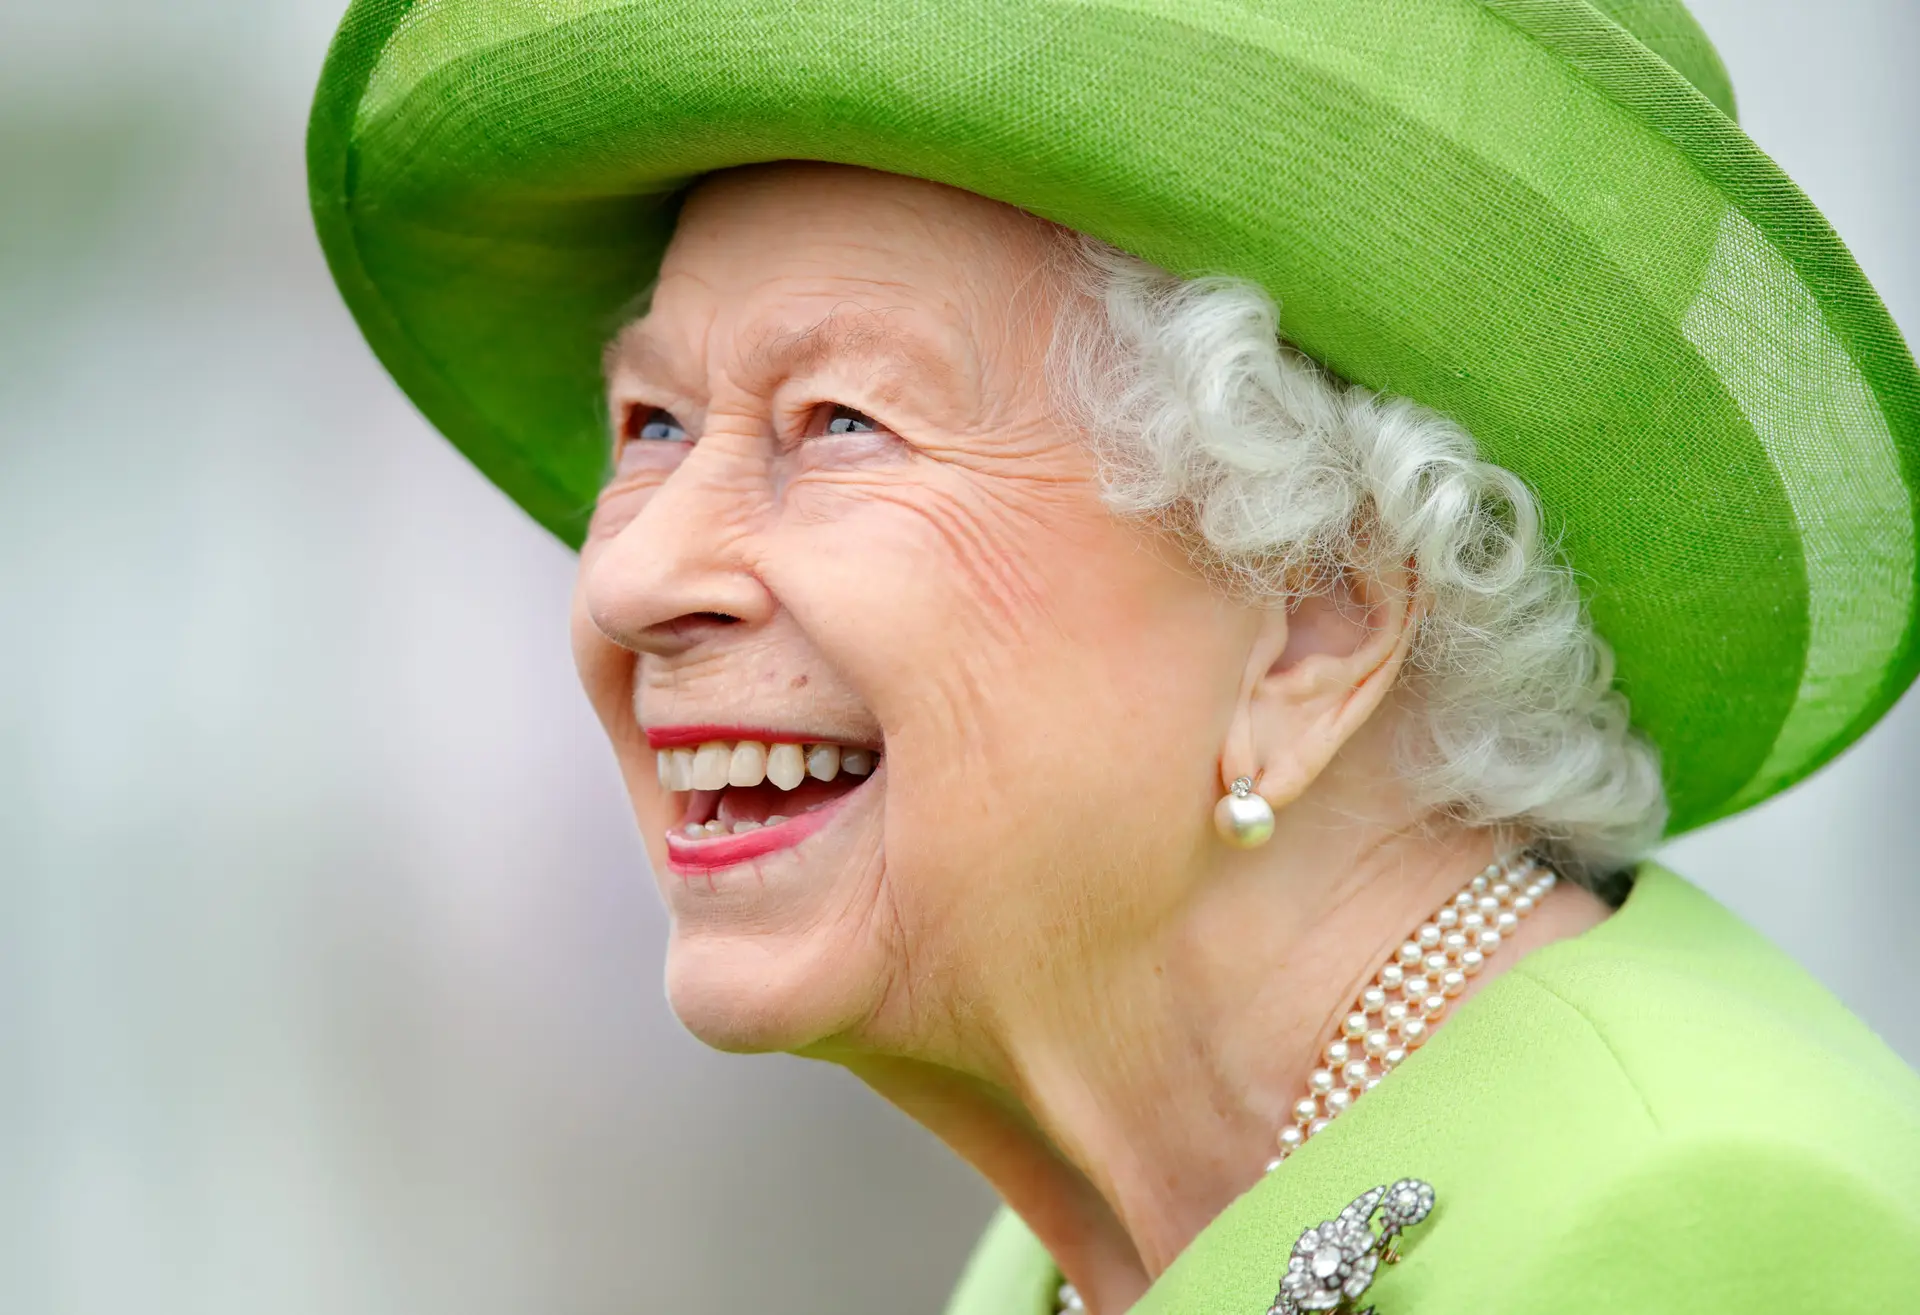 Rainha Isabel II: a vida de “Lilibet” até à mais longa monarquia do Reino Unido